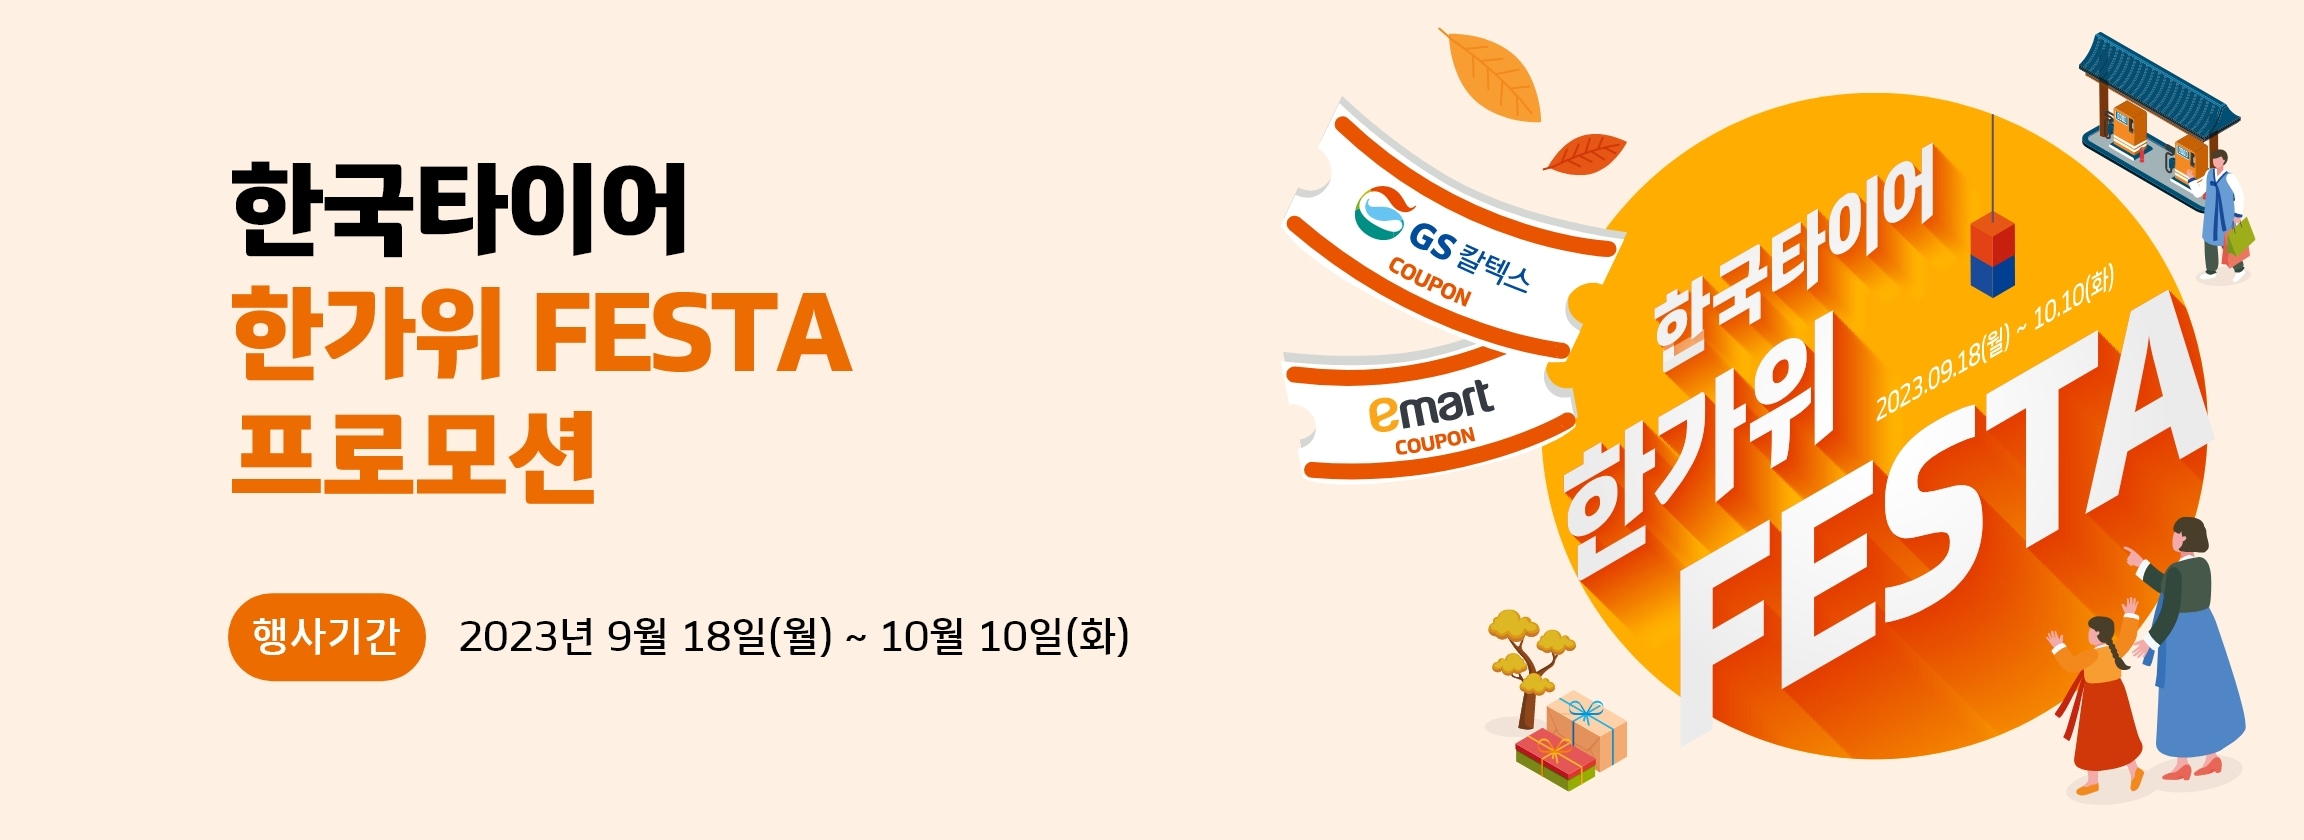 한국타이어 한가위 FESTA 프로모션